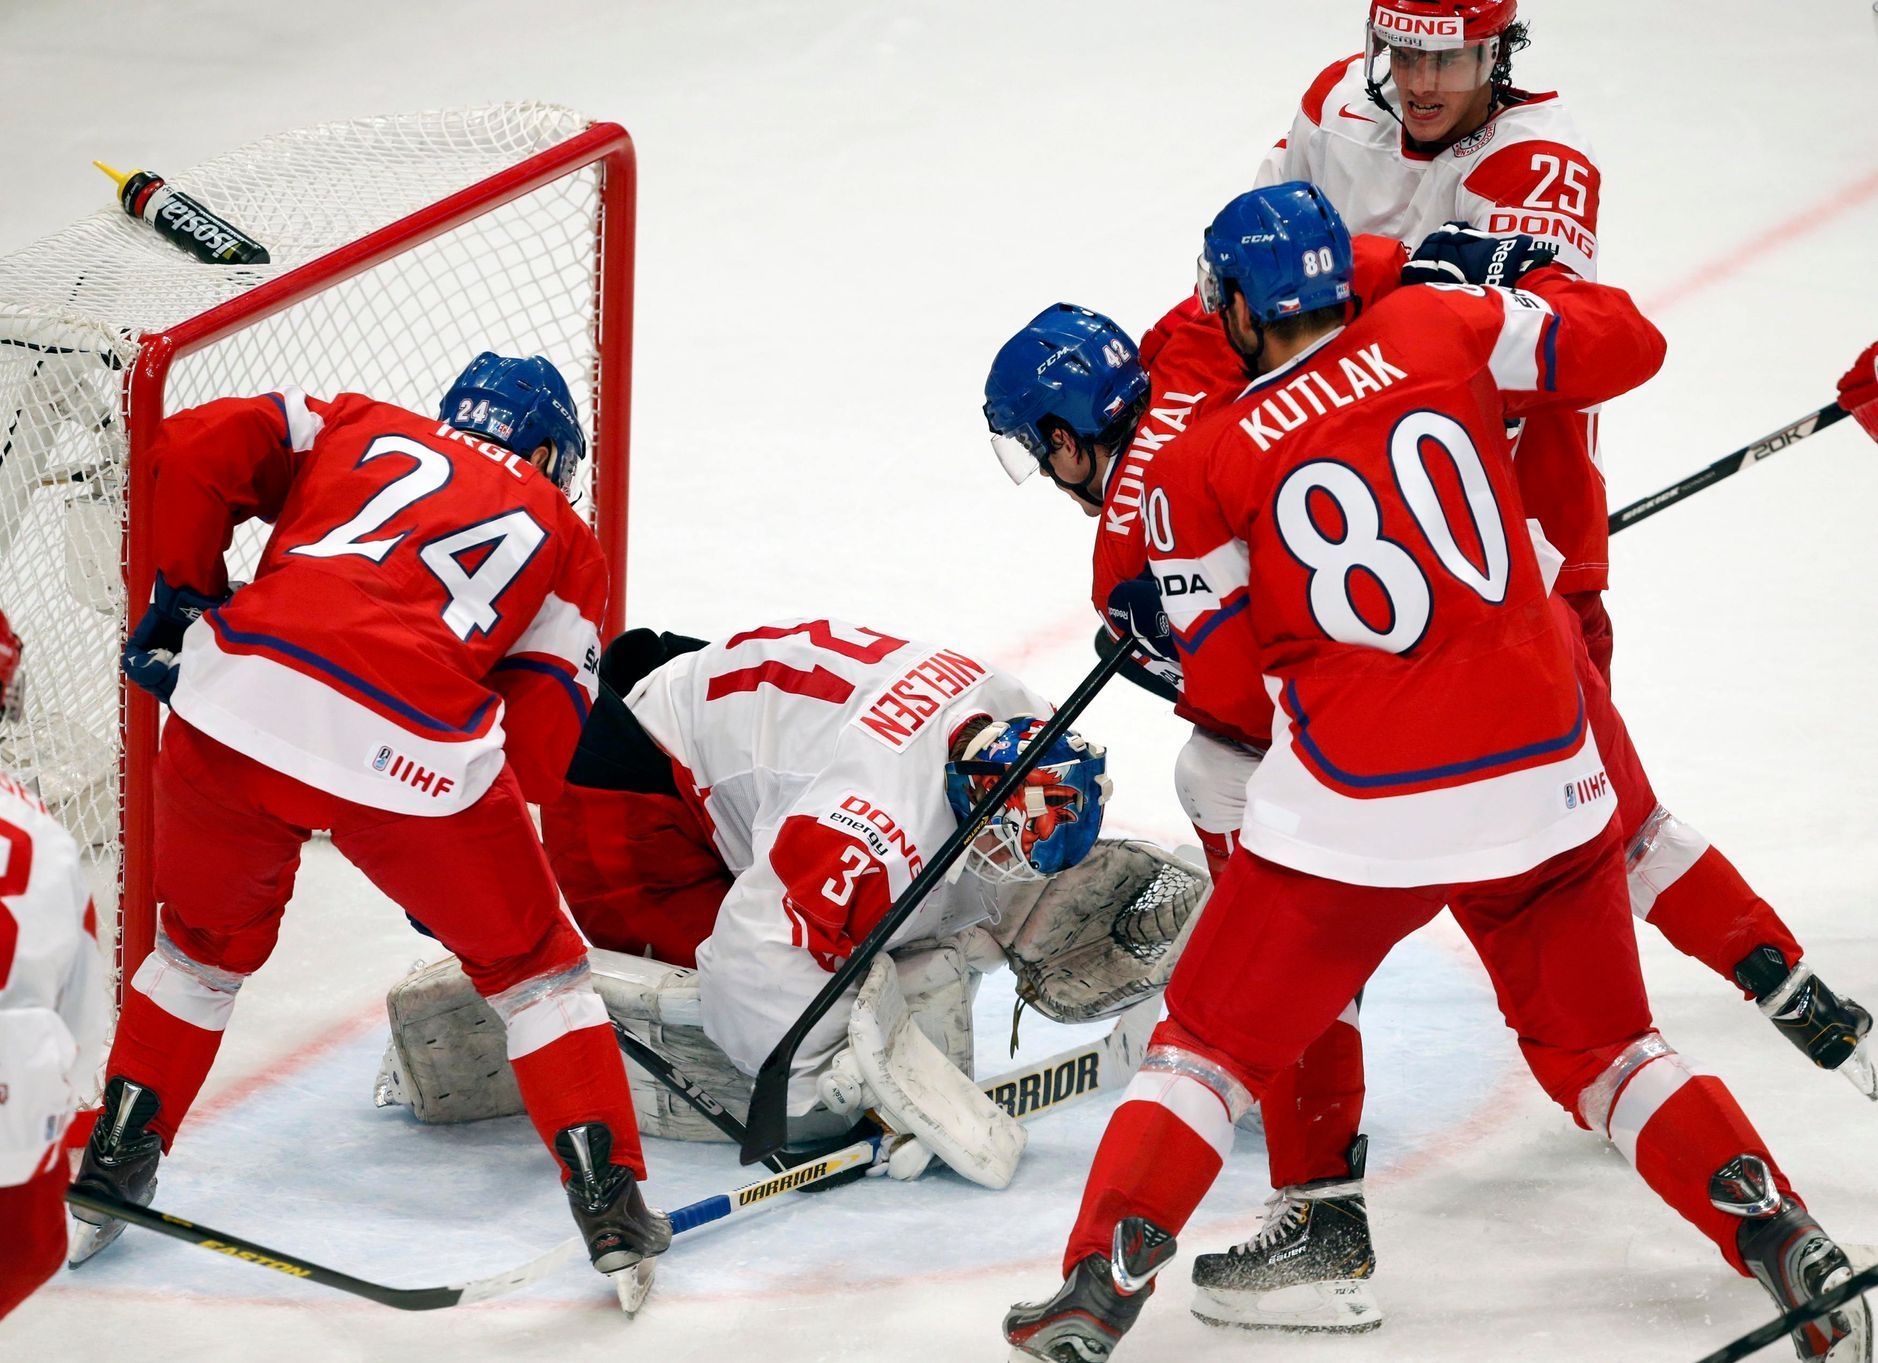 Hokej, MS 2013, Česko - Dánsko: Zbyněk Irgl, Zdeněk Kutlák a Petr Koukal - Simon Nielsen a Oliver Lauridsen (25)